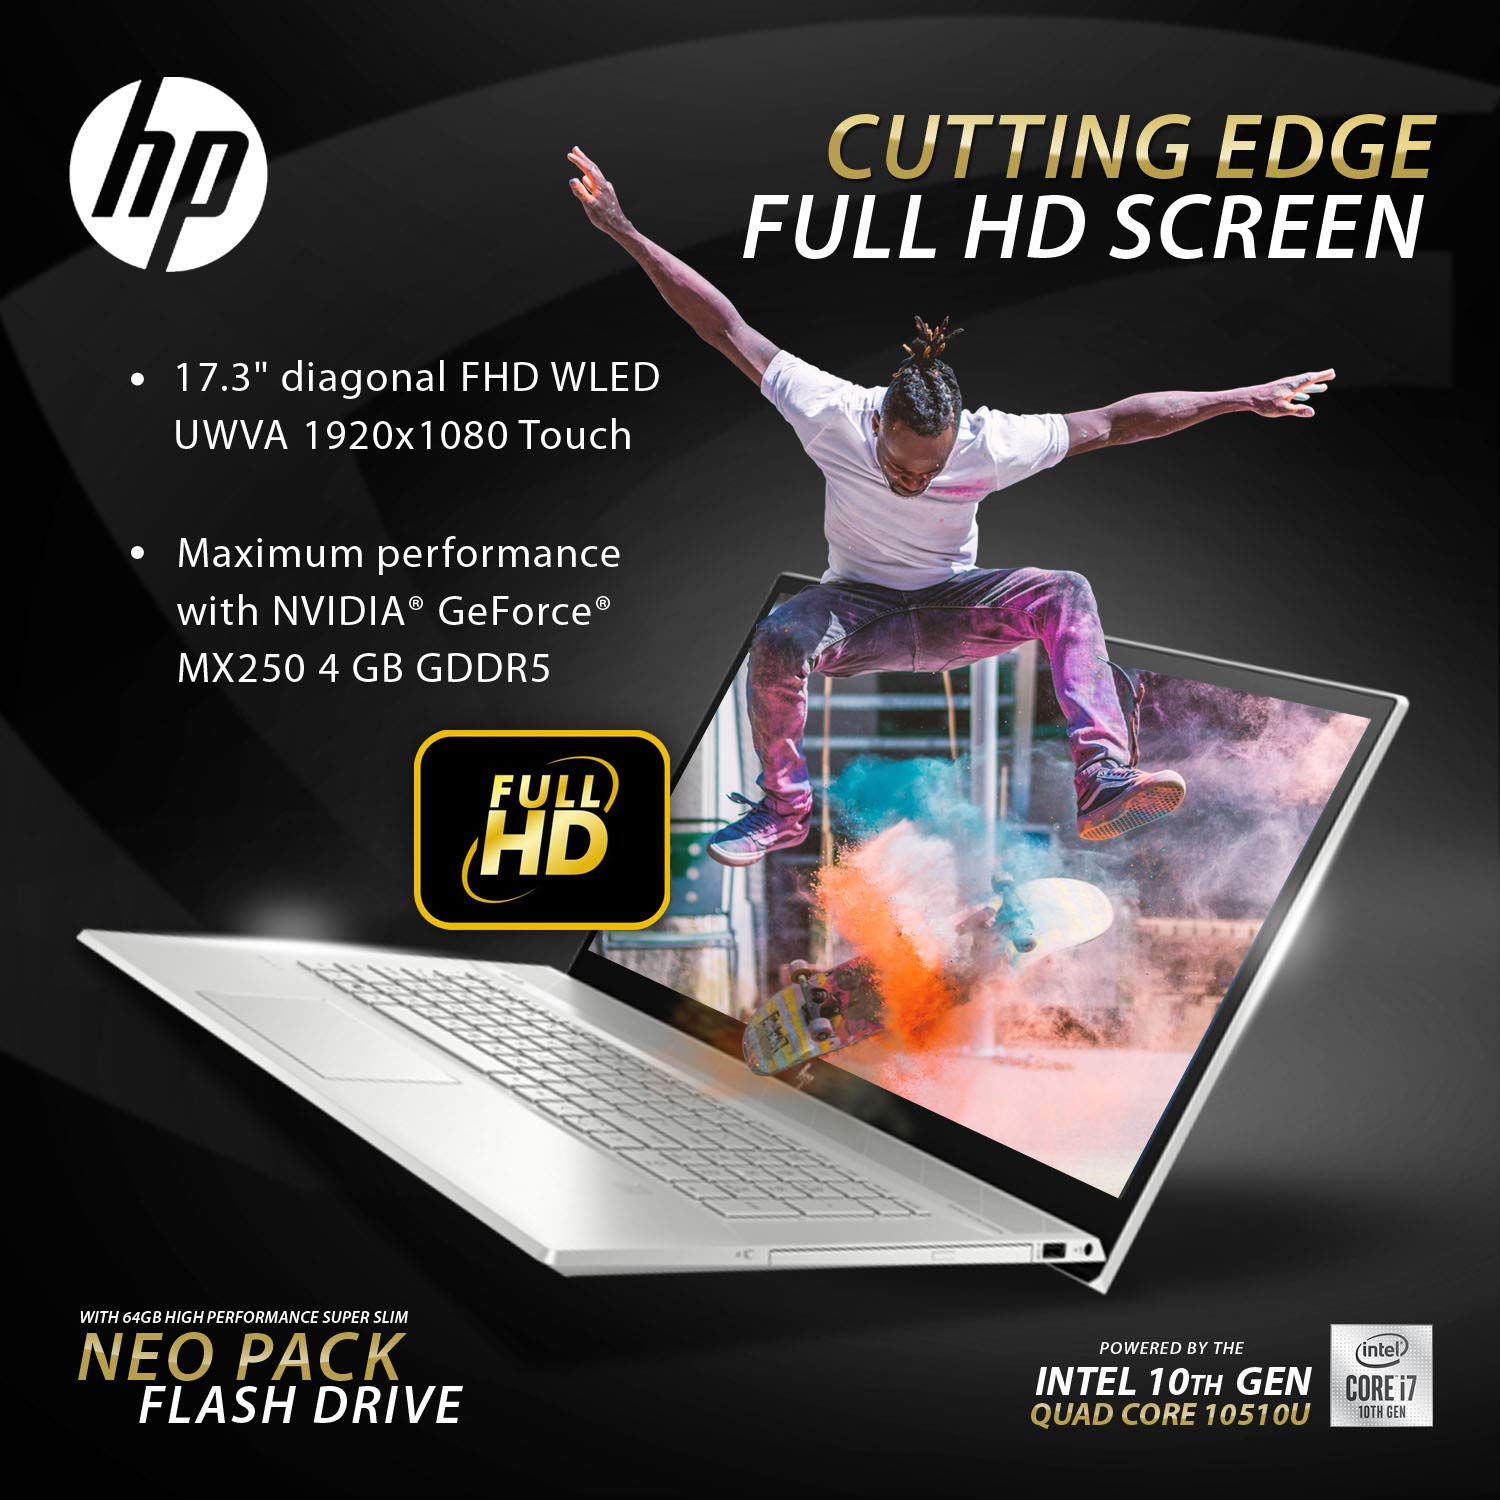 HP Envy 2019,17.3" Full HD Touch, i7-10510U 10th gen Quad CPU,NVIDIA MX250(4GB), 1TB SSD NVME,16GB DDR4 2666 RAM,Win 10 Pro, Neopack 64GB Flash Drive, B&O Speakers, Premium Wty, No DVD RW